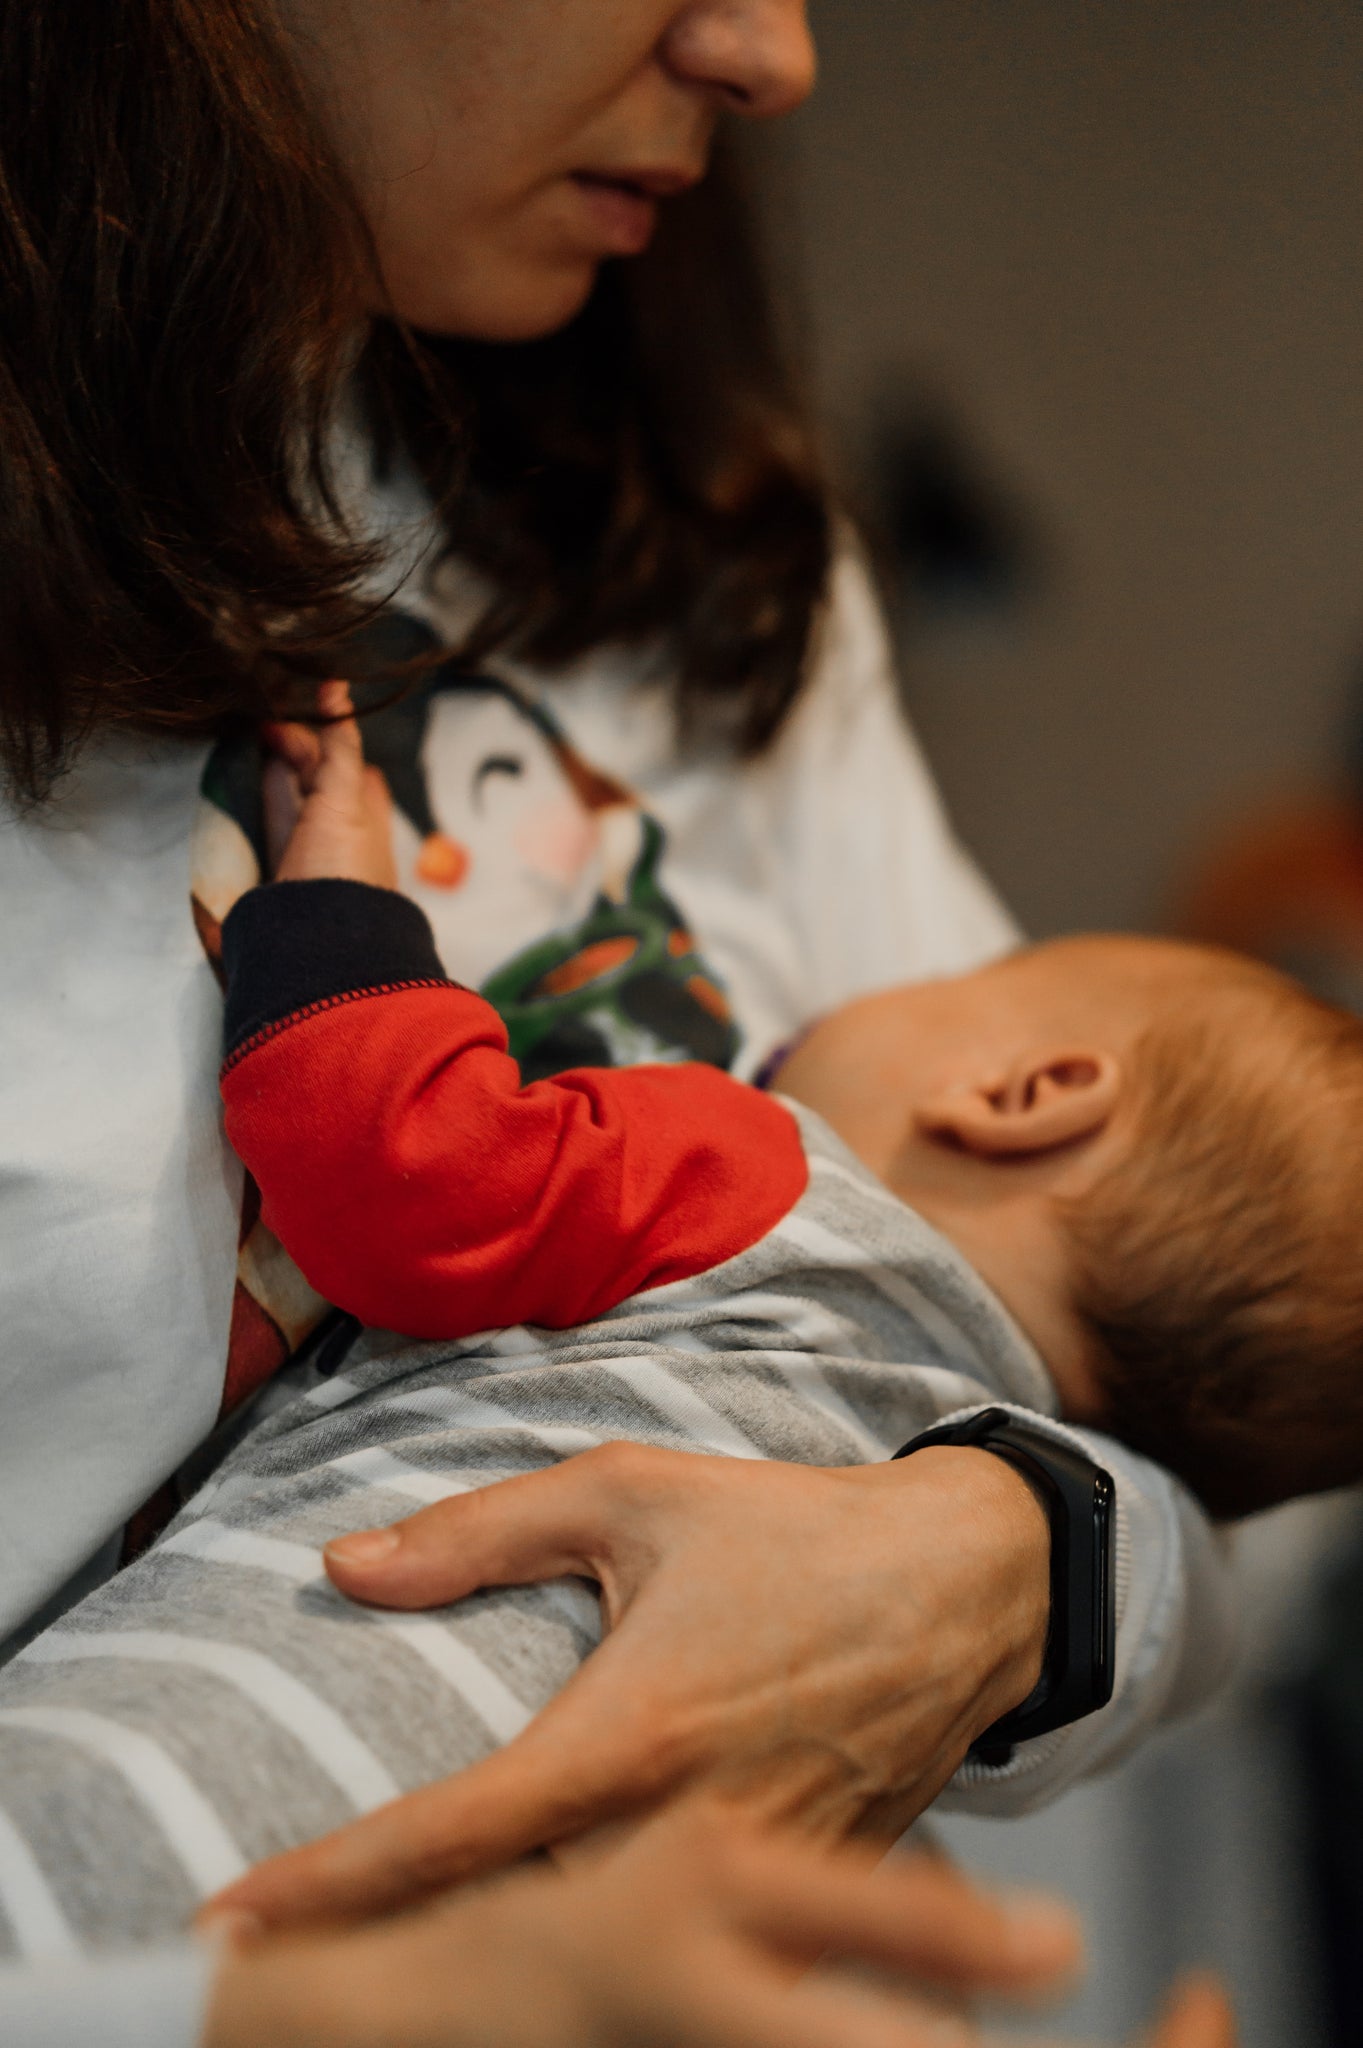 Breastfeeding - Is It Always Better Than Formula Feeding?